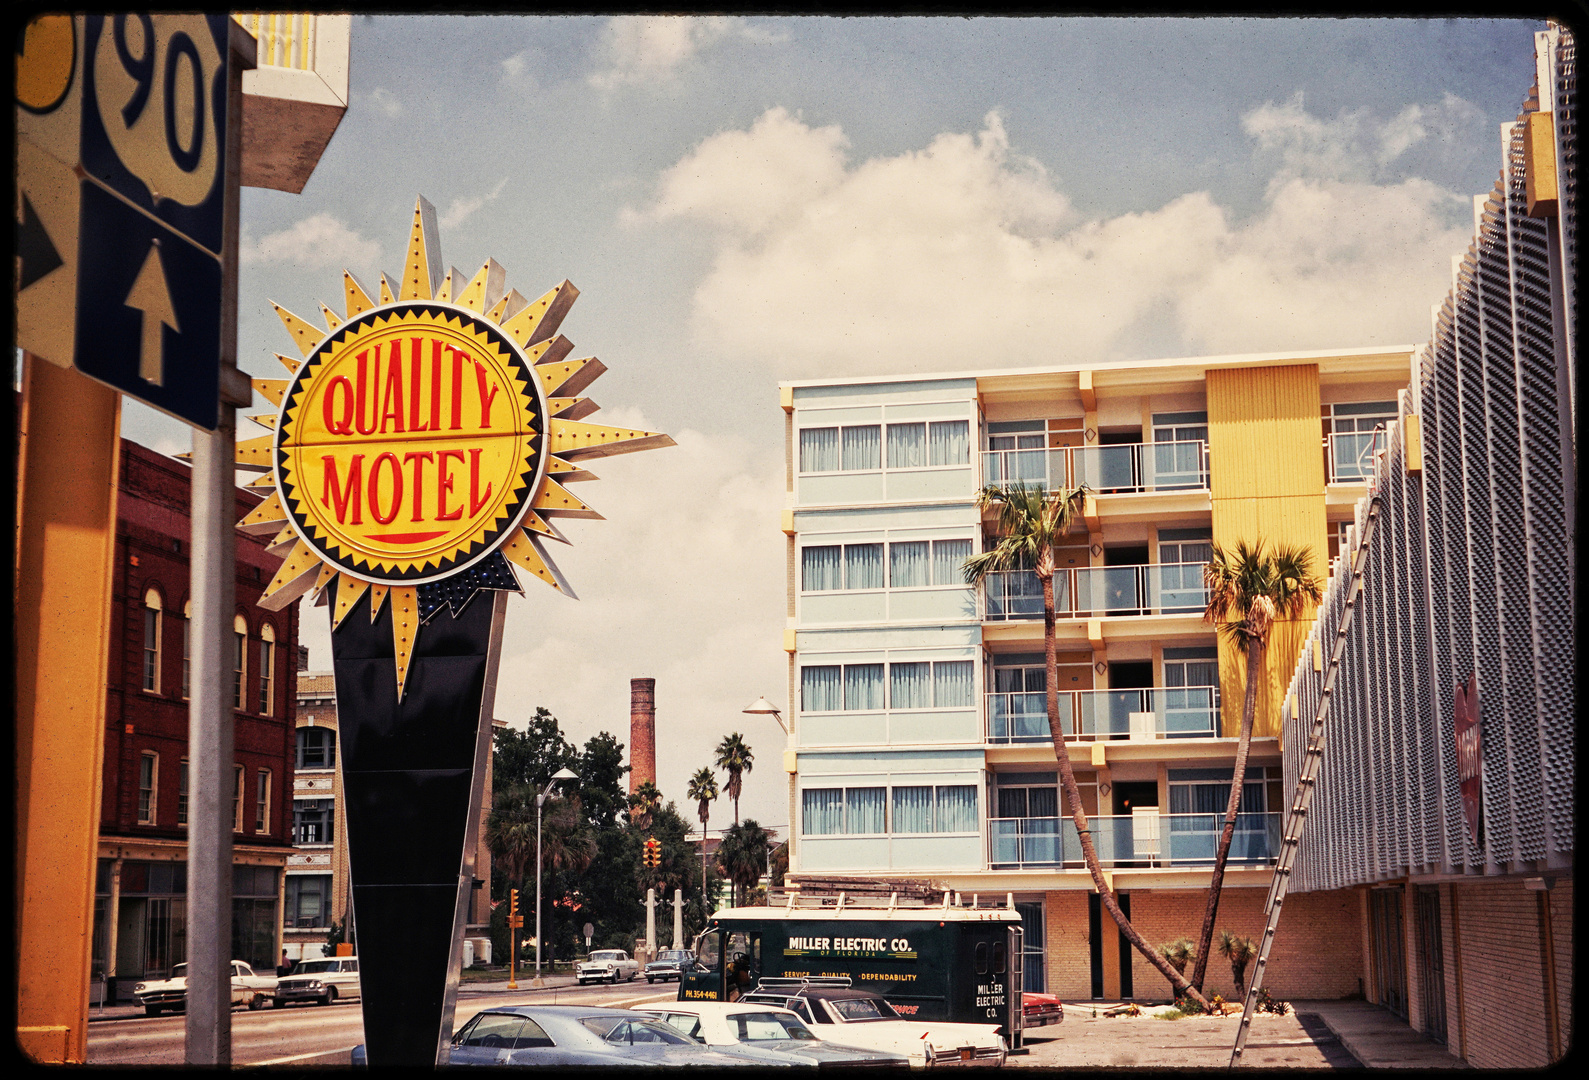 Quality Motel USA 1966